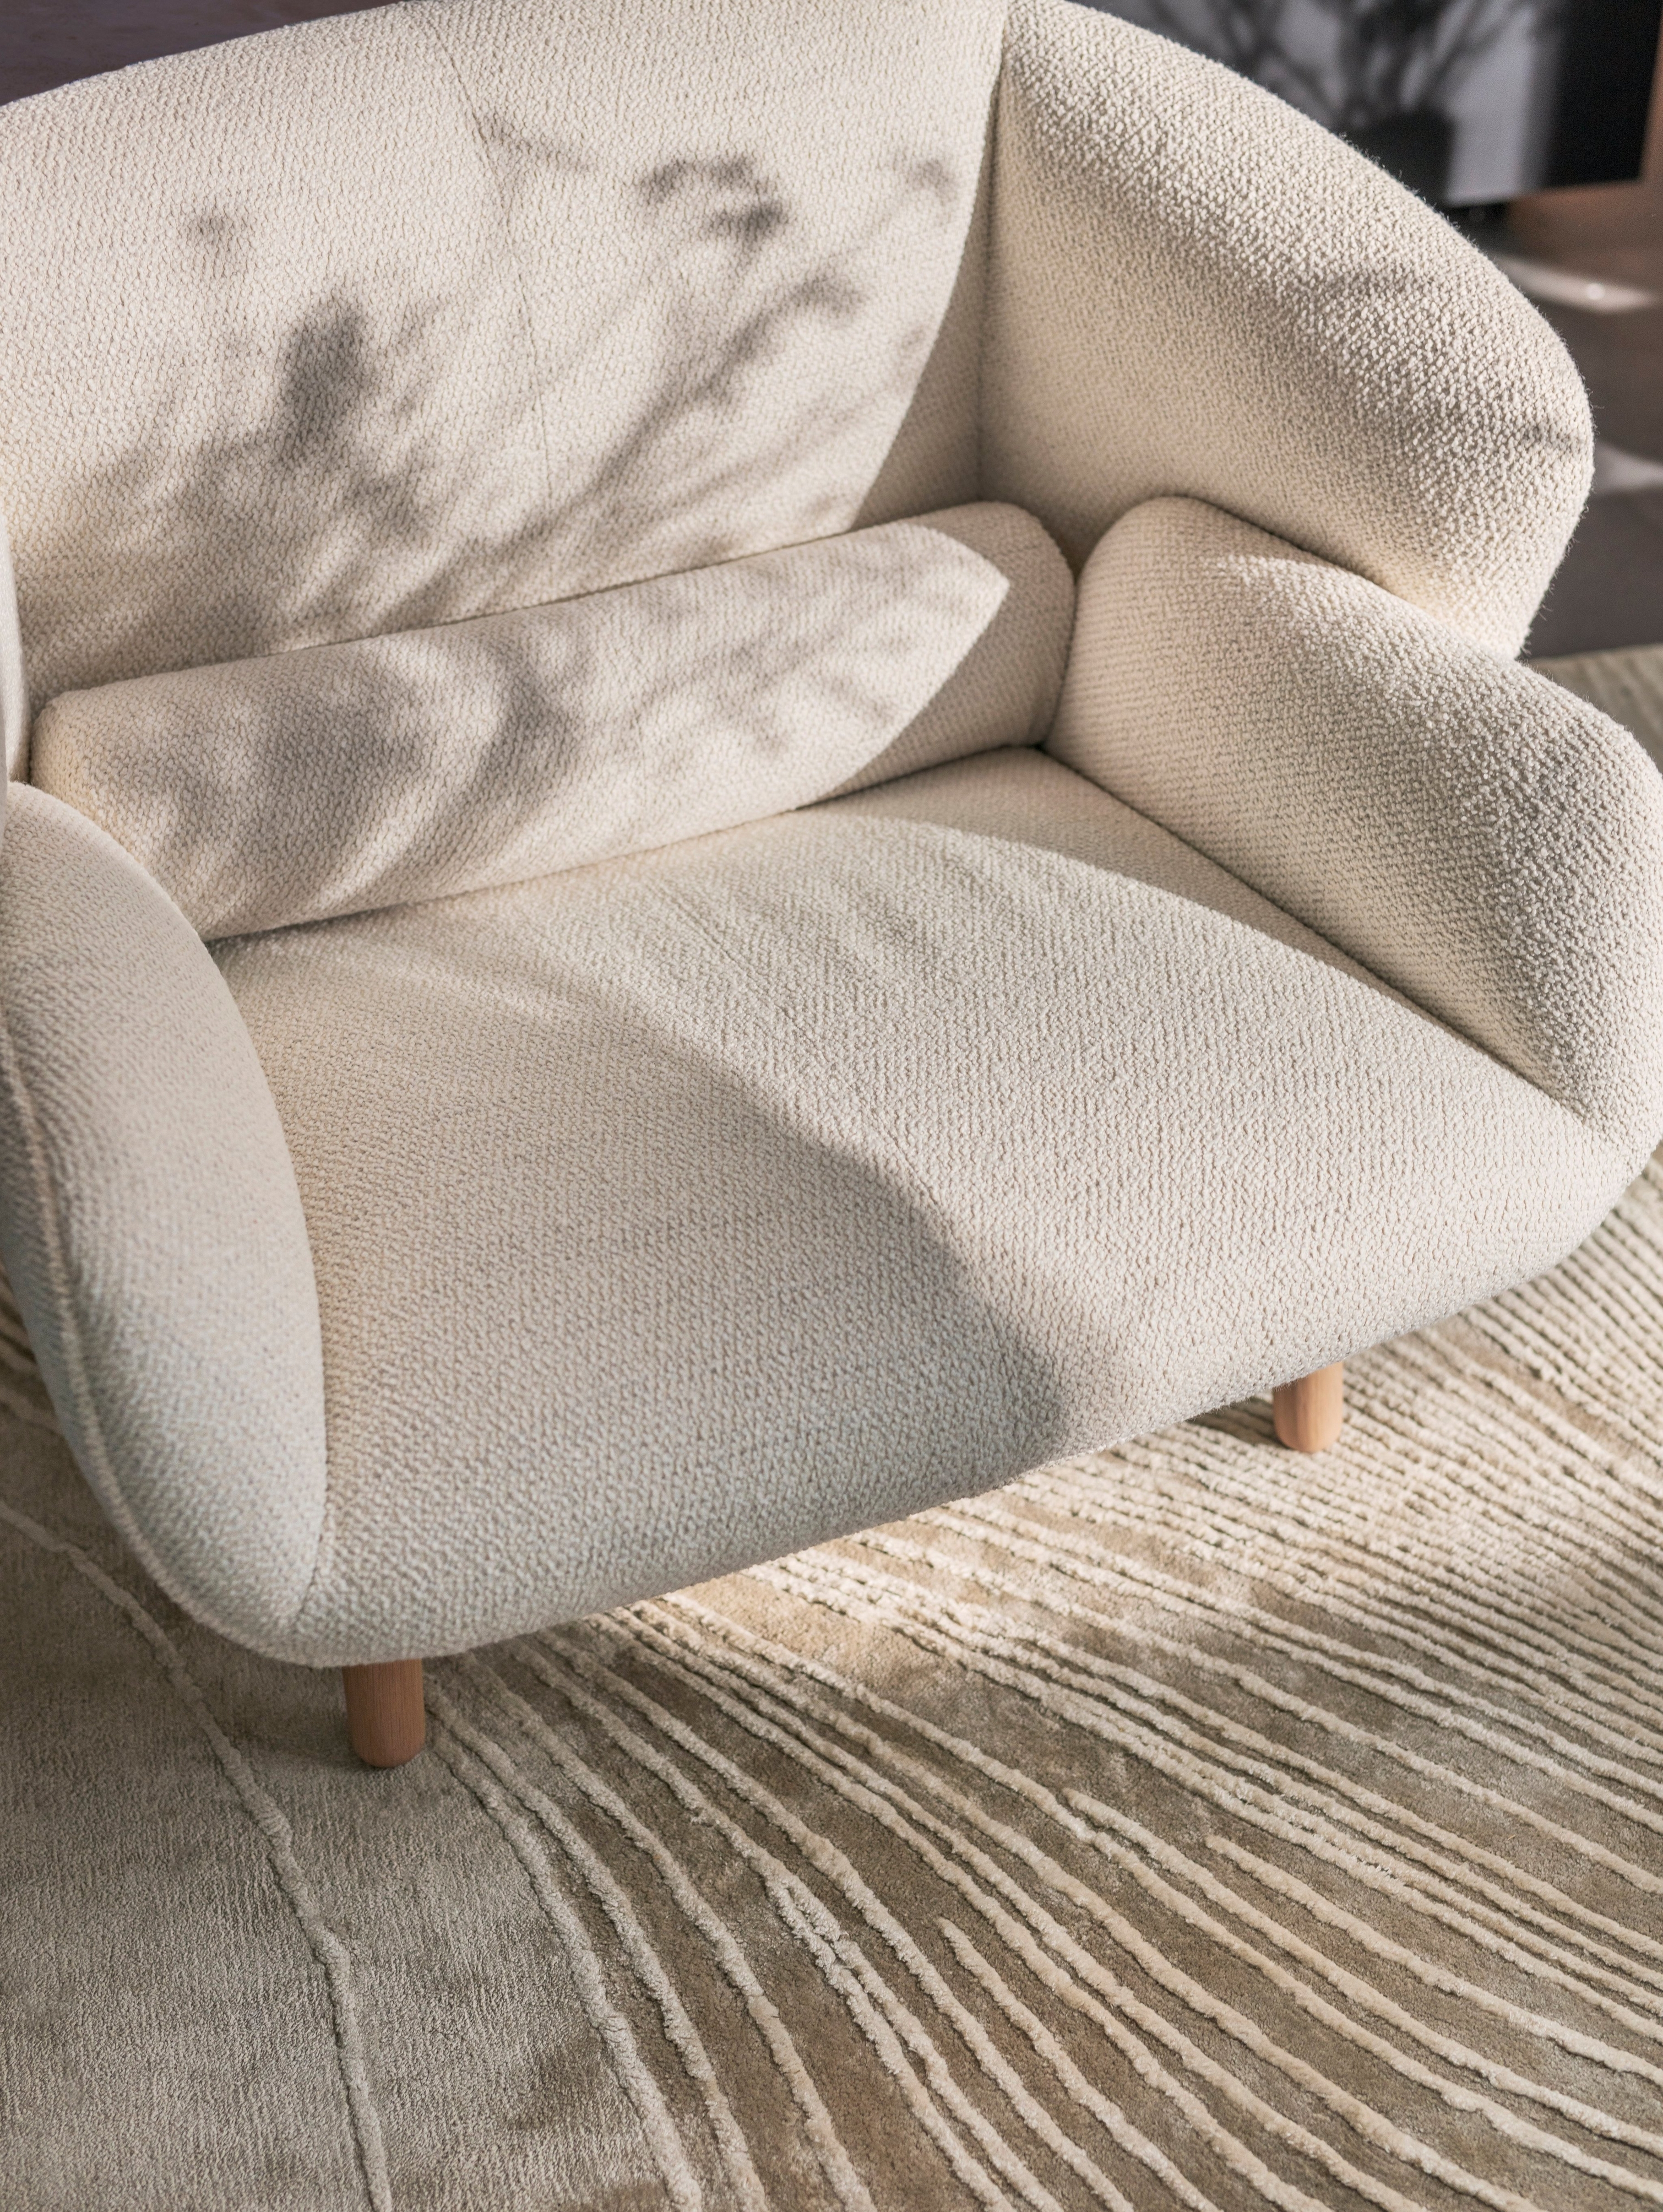 Fusion Sessel aus weißem Lazio Stoff in Kombination mit dem Tide Teppich in Grau/Weiß.